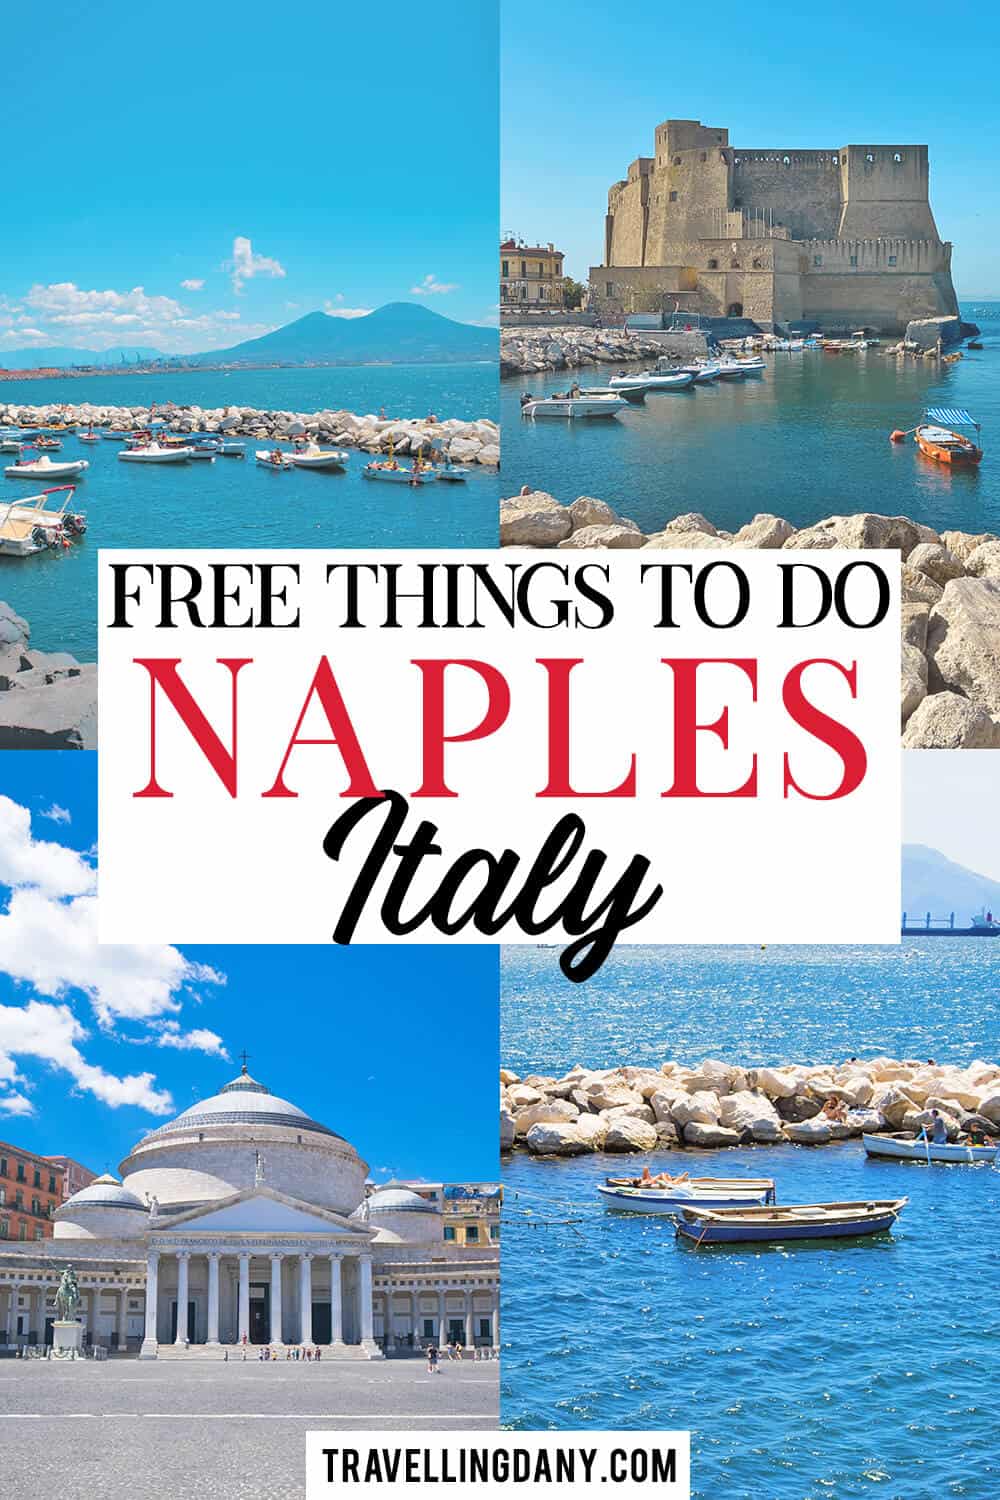 Scopri tante idee utili e cosa fare a Napoli senza spendere un centesimo. Con tanti consigli utili per visitare Napoli in economia, come se fossi uno del posto!